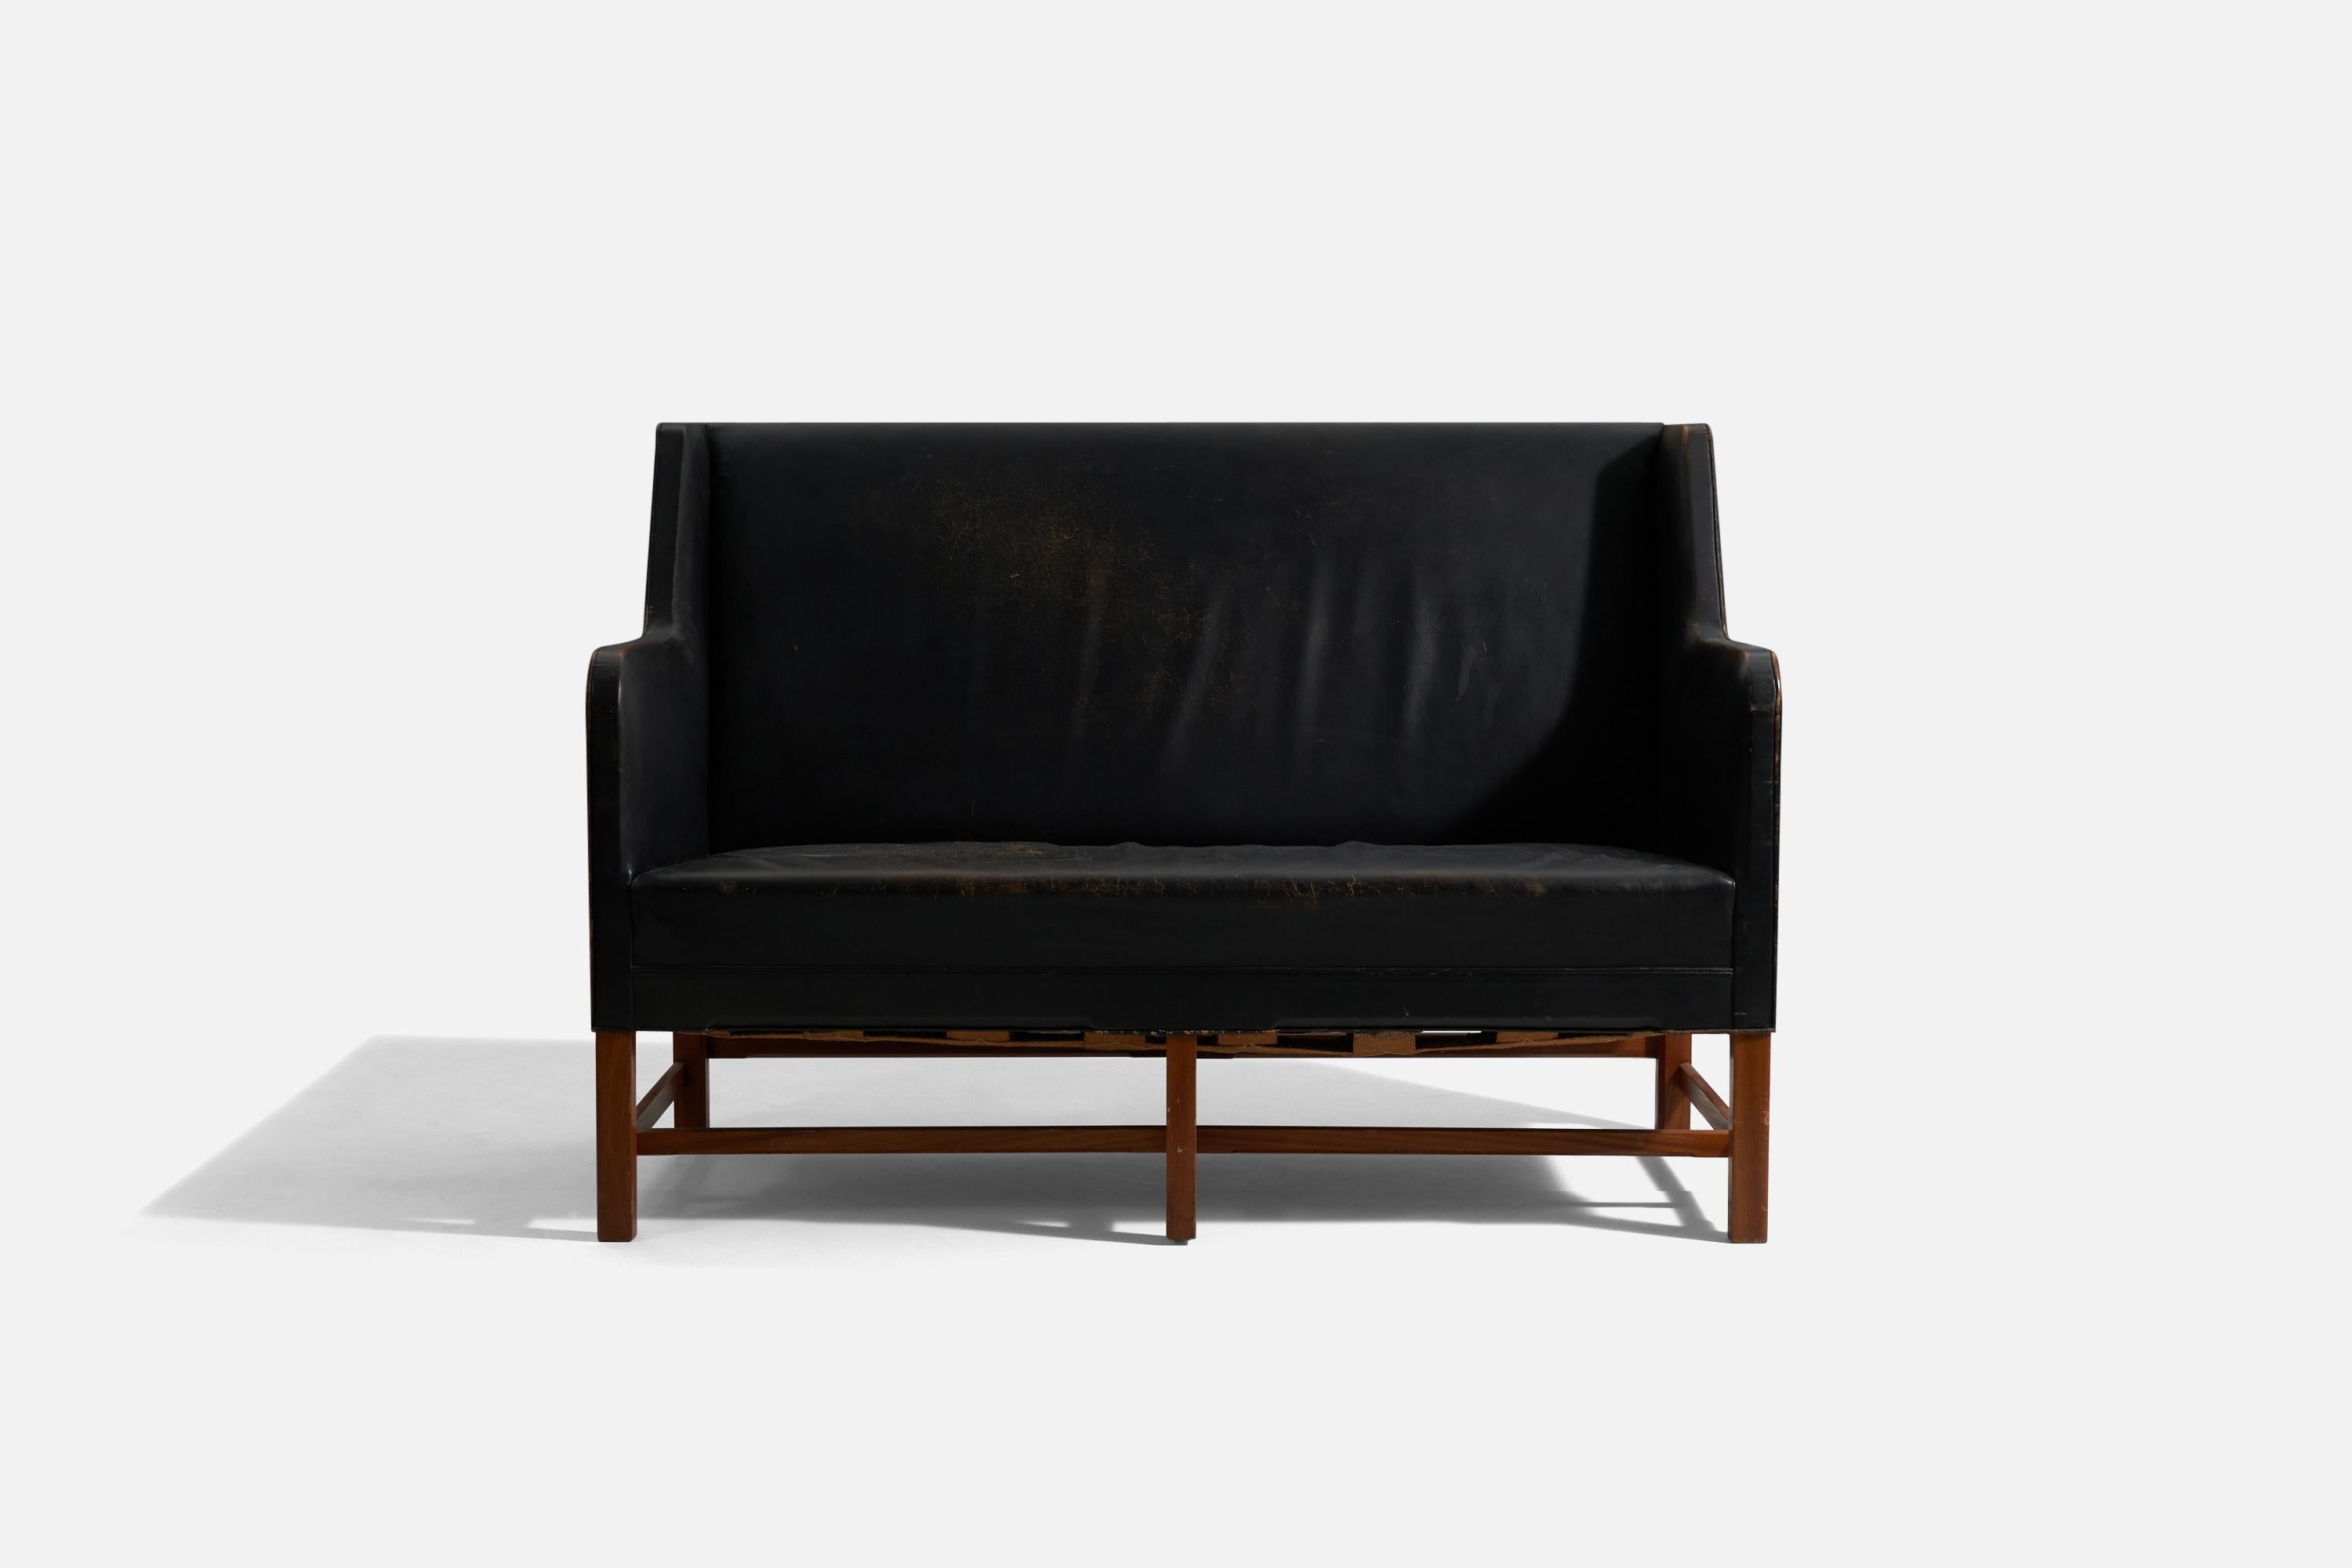 Ein frühes, originales Sofa mit zwei Sitzplätzen. Entworfen von Kaare Klint, hergestellt vom Tischler Rud Rasmussen, Dänemark, ca. 1940er Jahre. Modell 5011, entworfen im Jahr 1935.

Beine aus Mahagoni.